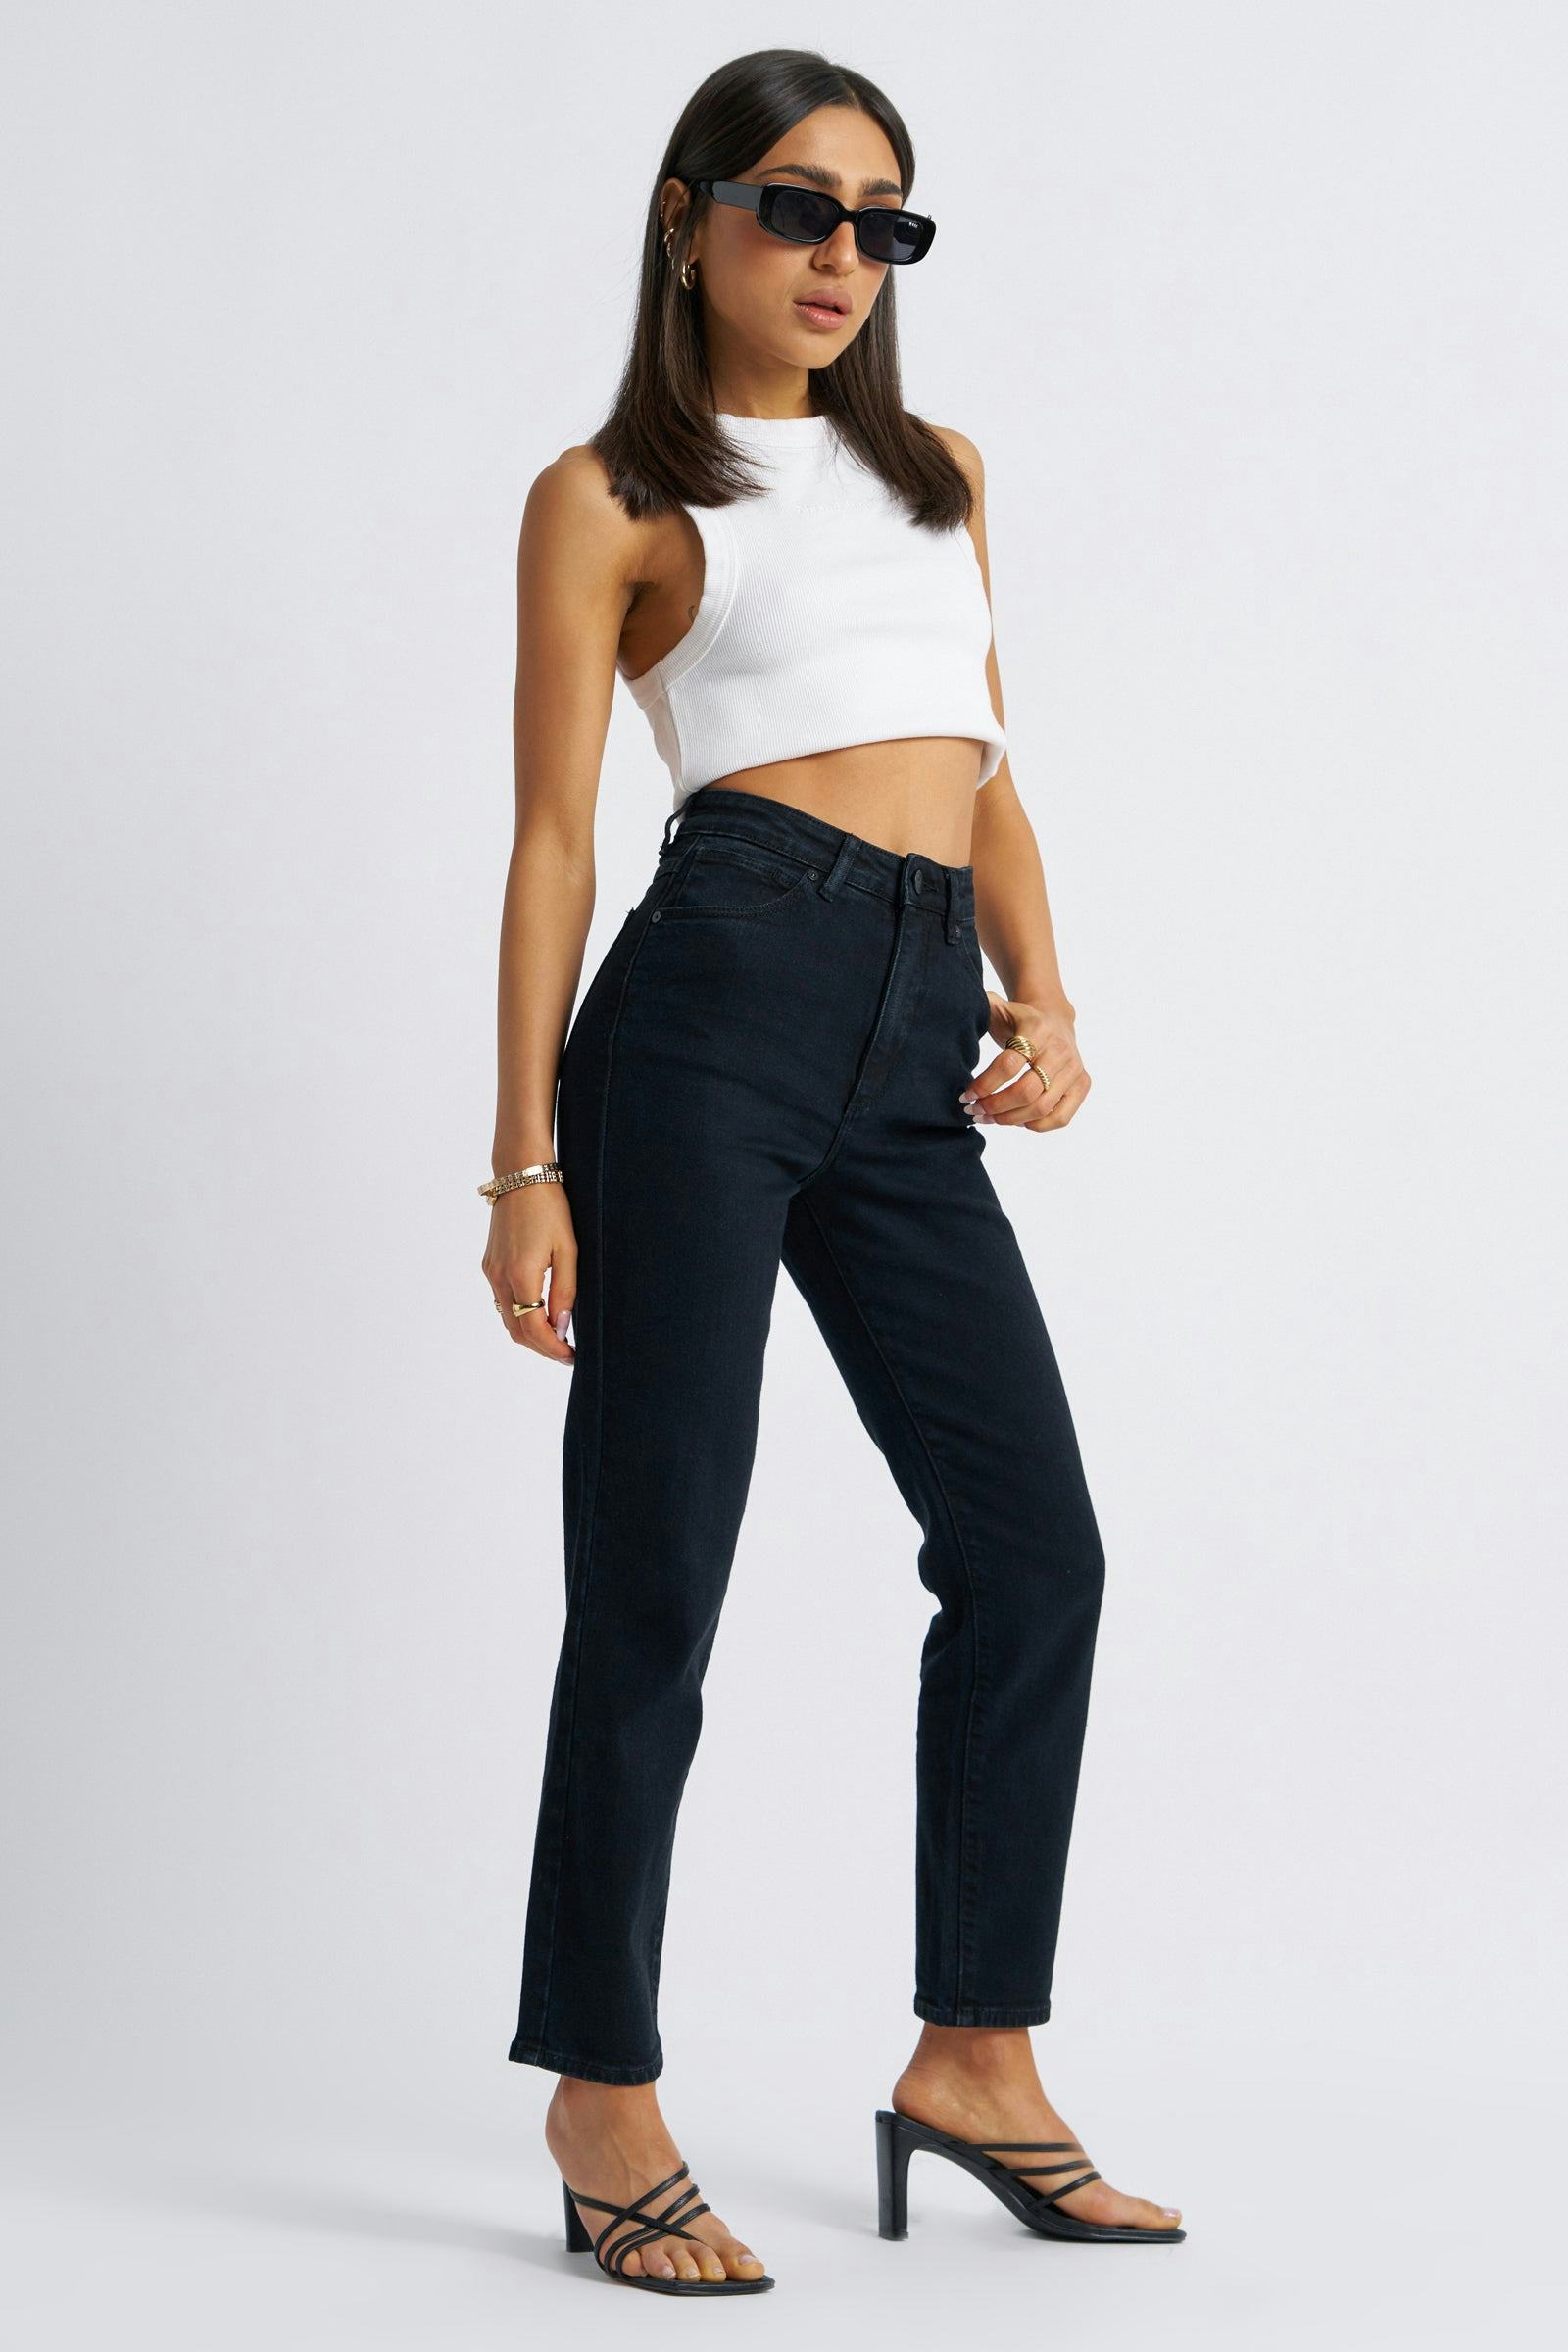 Buy 94 High Slim Petite Vintage 90210 Online | Abrand Jeans